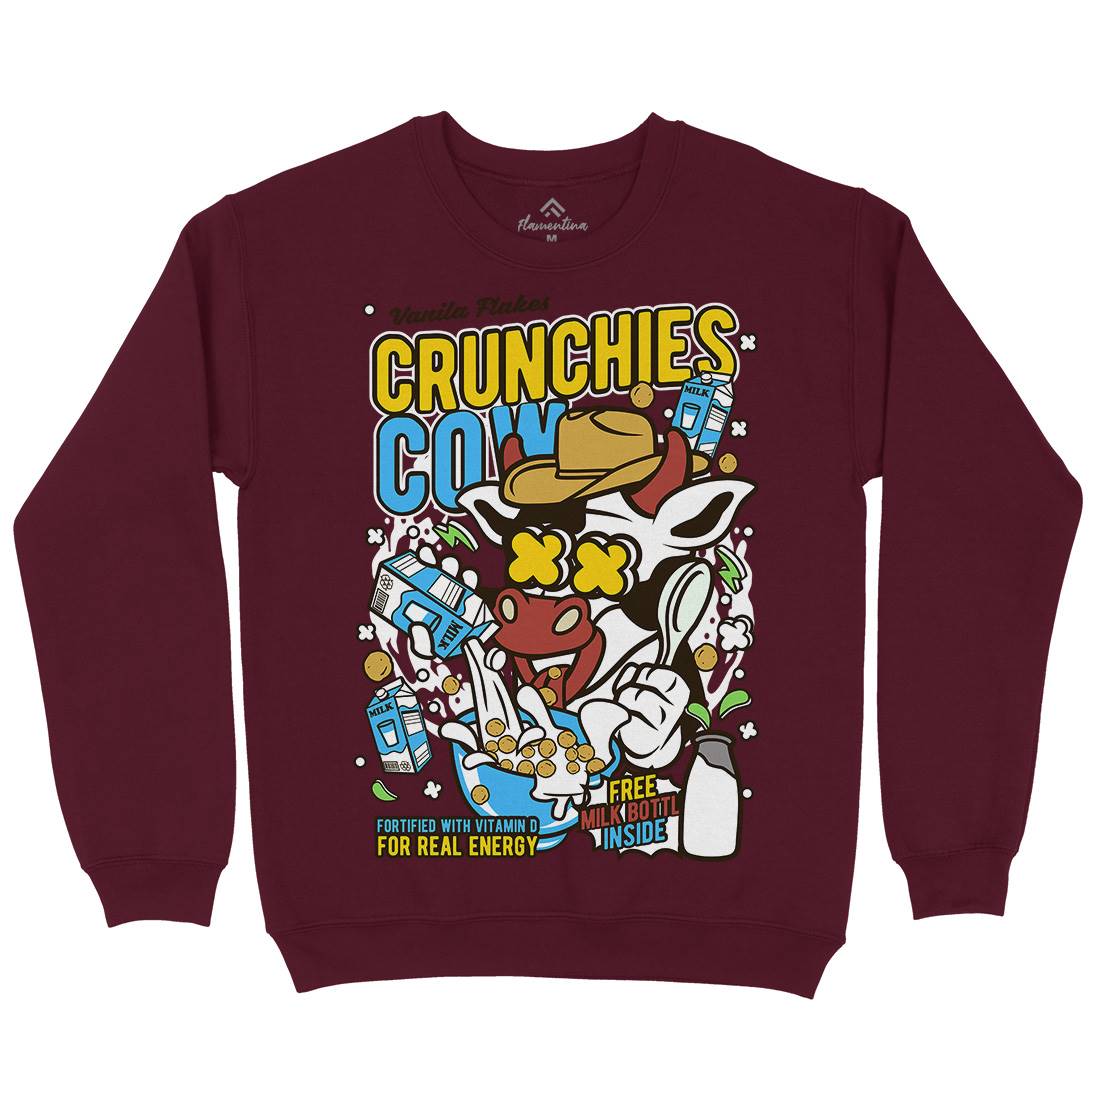 Crunchies Cow Kids Crew Neck Sweatshirt Food C533